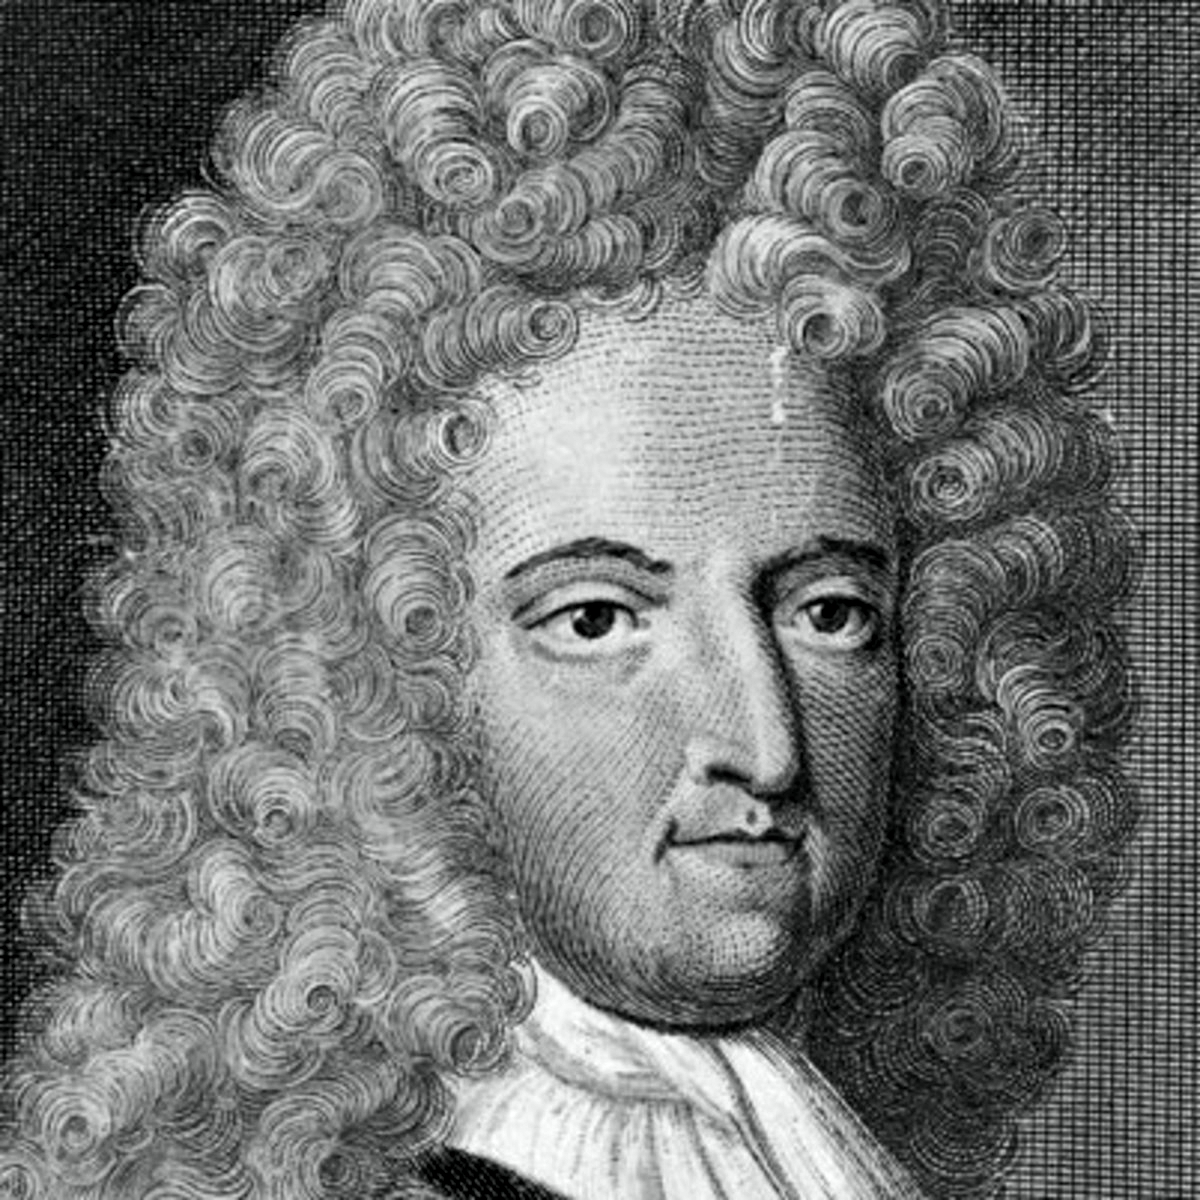 Дэниел дефо. Даниель Дефо (1660-1731). Даниэль Дефо портрет. Д. Дефо (1660-1731), английский писатель и публицист,. Даниэль Дефо писатель.